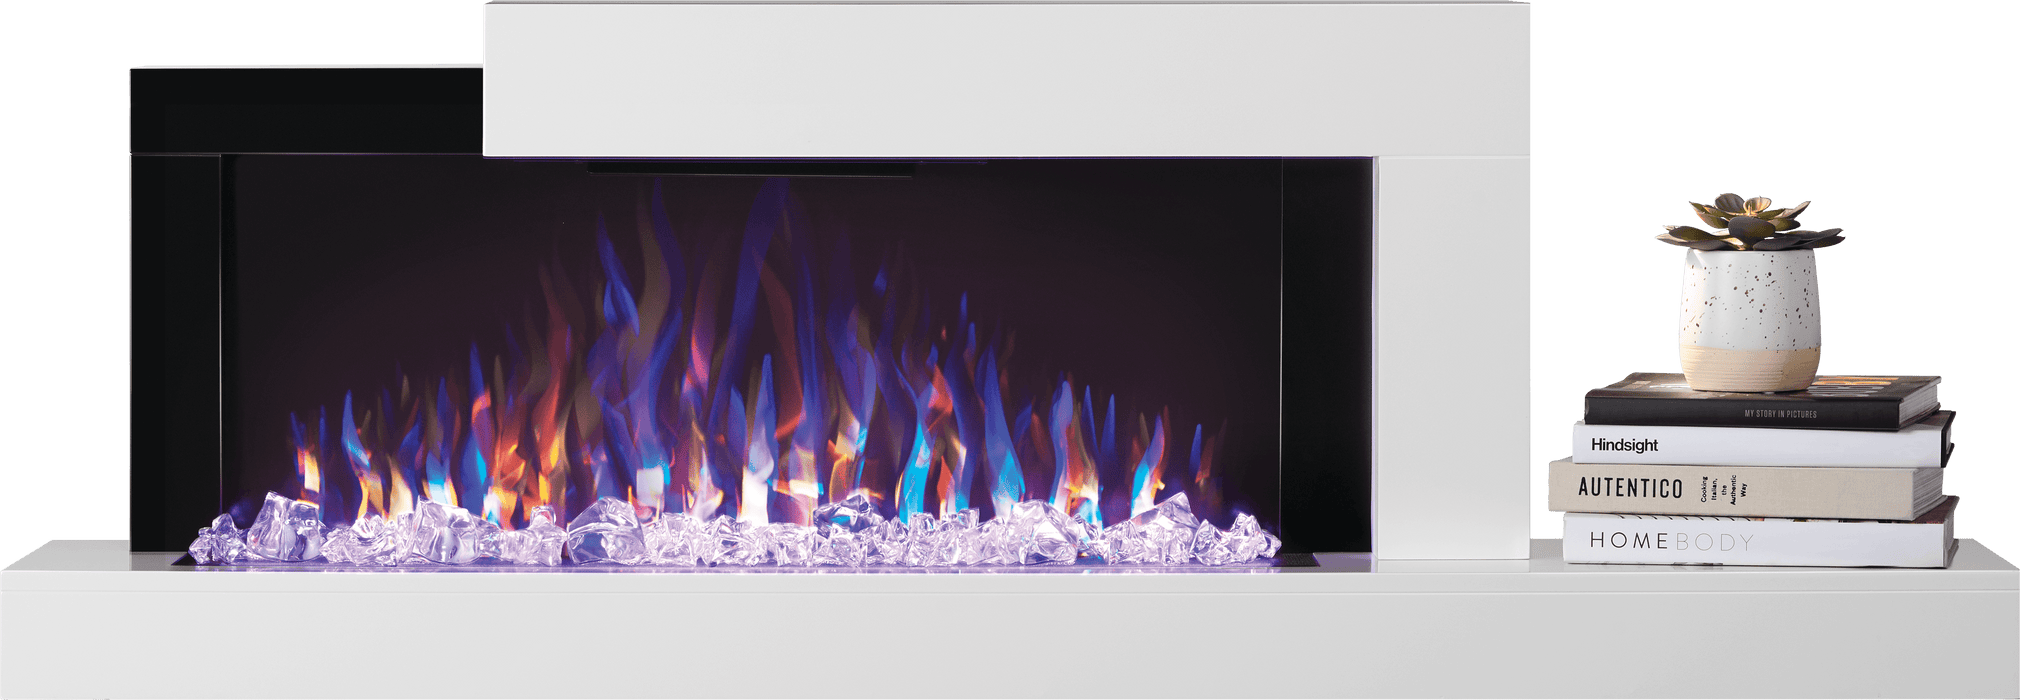 Napoleon Stylus Wallmount Electric Fireplace NEFP32-5019W NEFP32-5019W